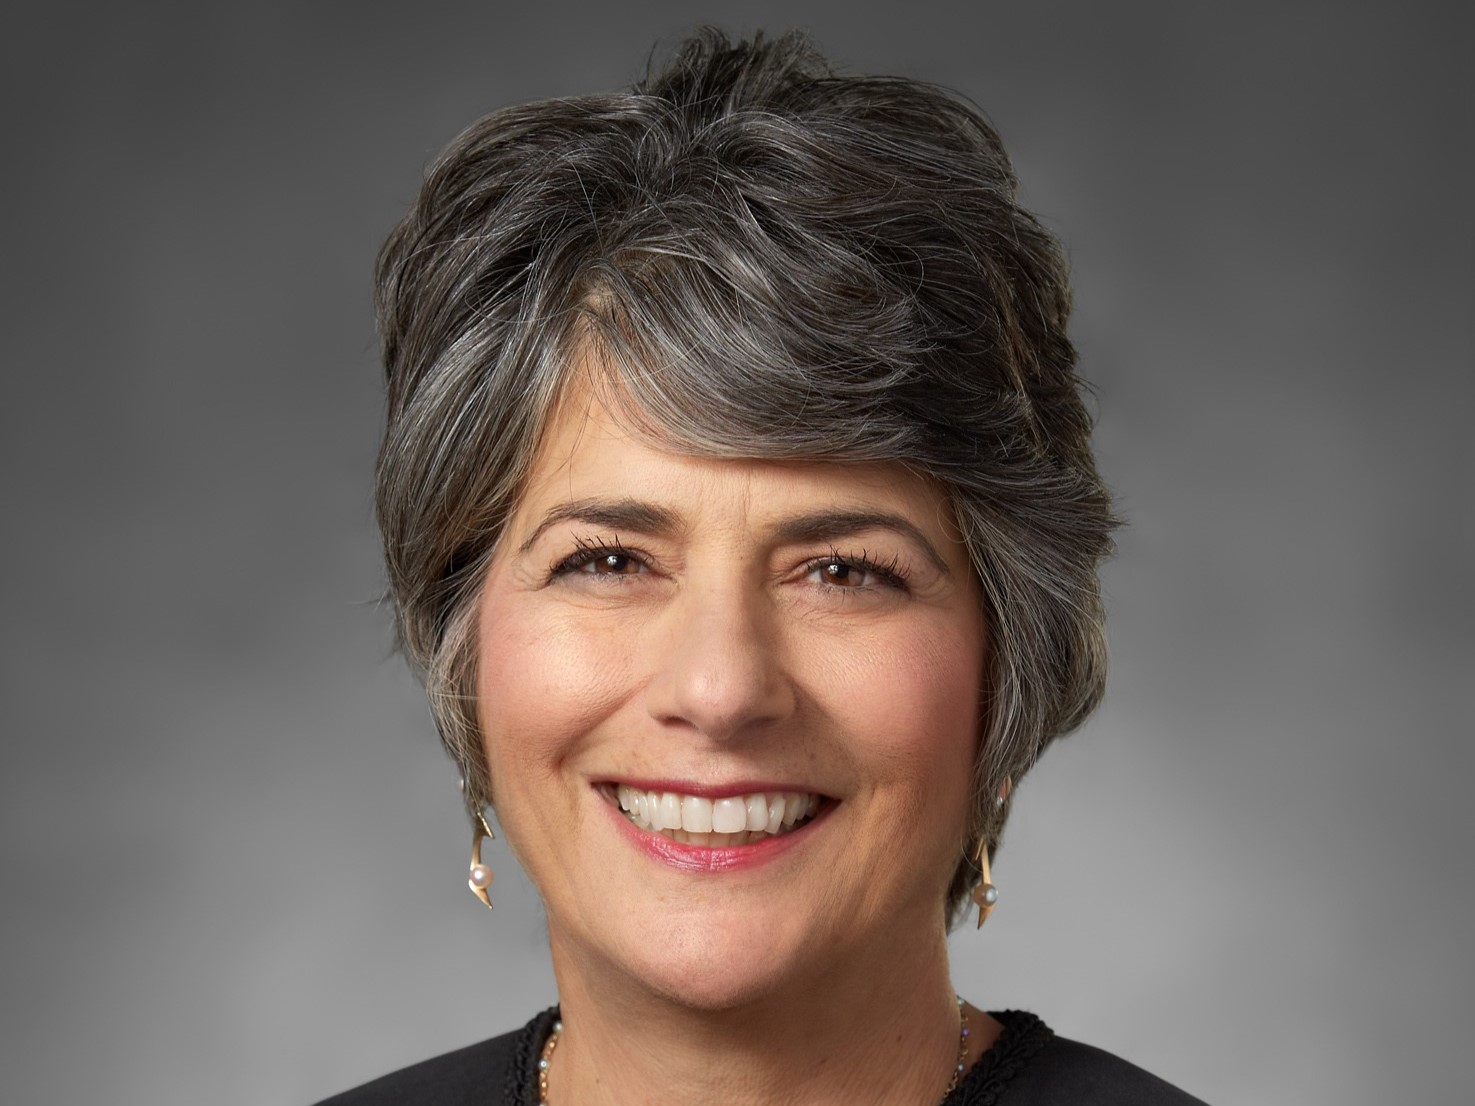 Judge Sharon Kalimkiarian